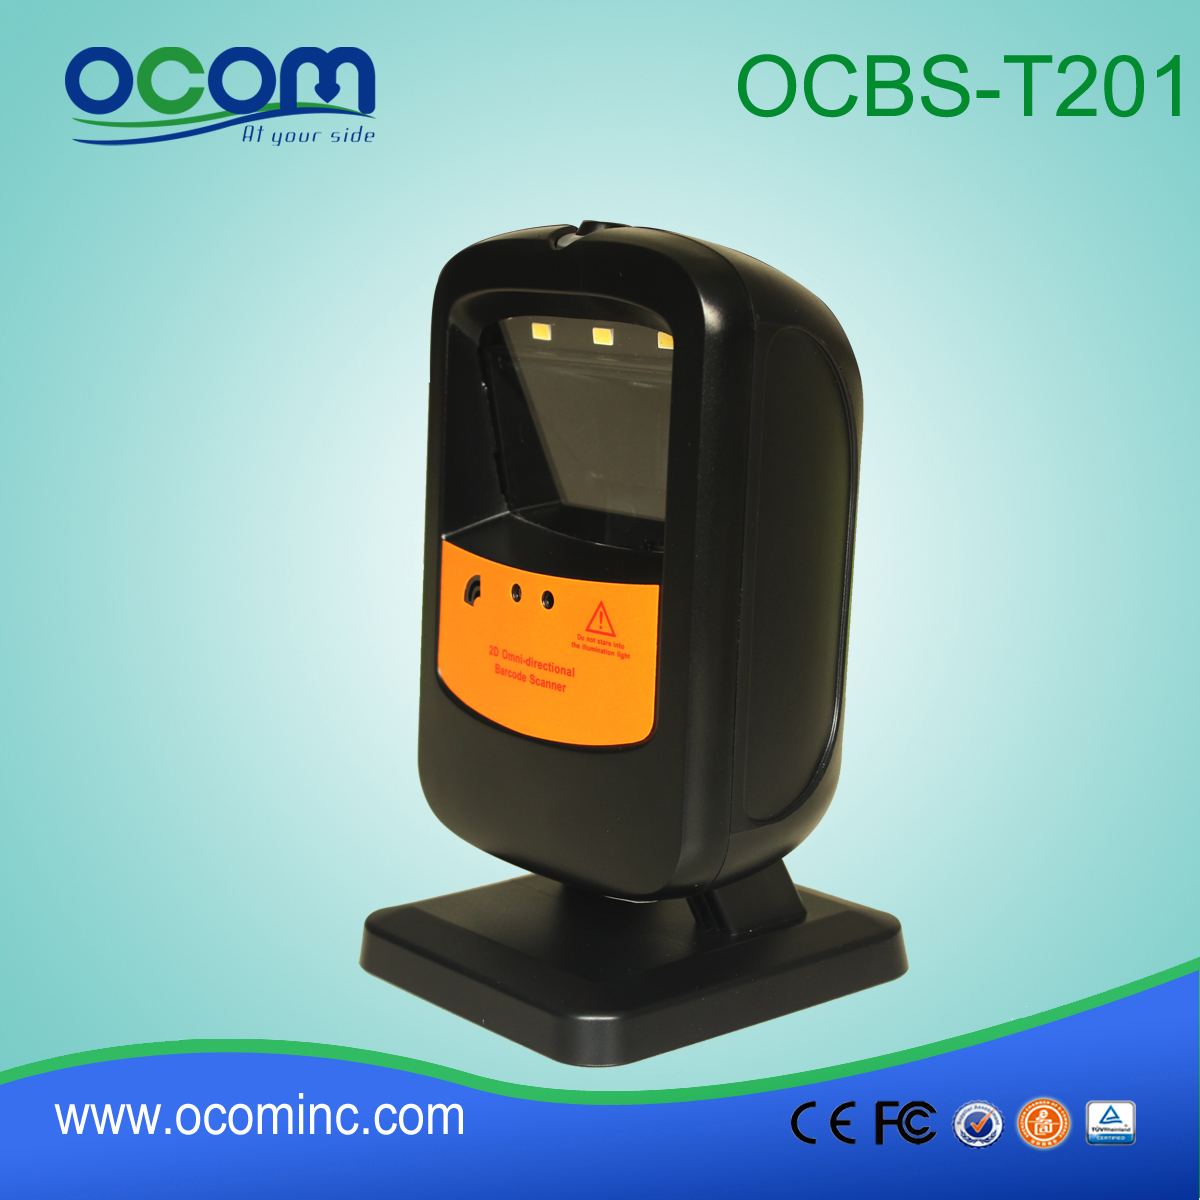 OCBS-T201 Omni-gerichtete 2D Barcode-Scanner im POS-System